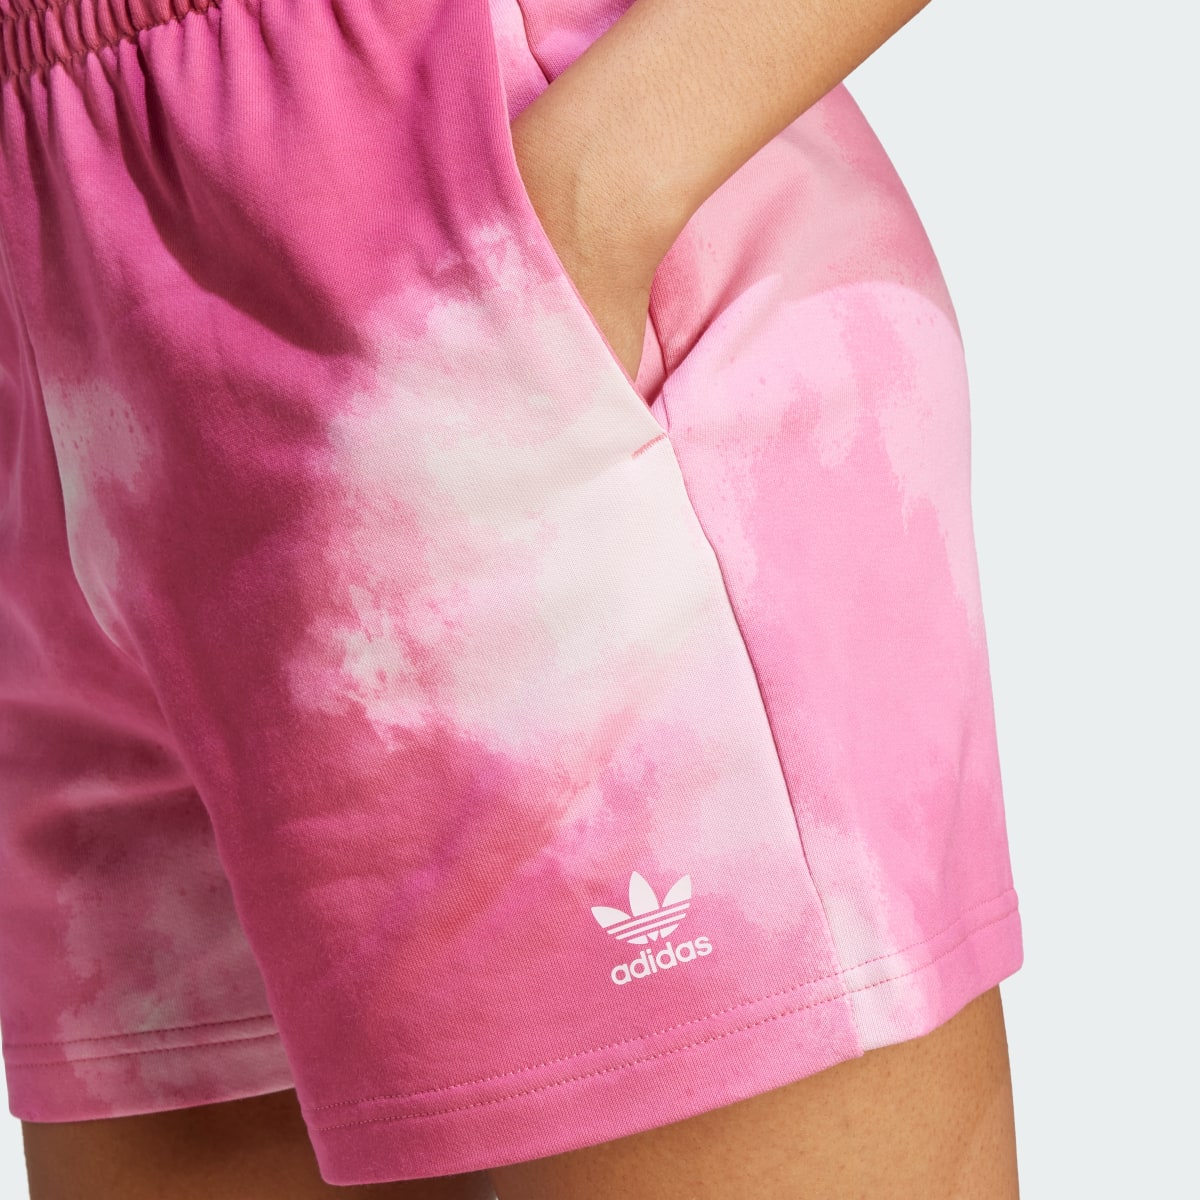 Adidas Colour Fade Jersey Shorts. 5